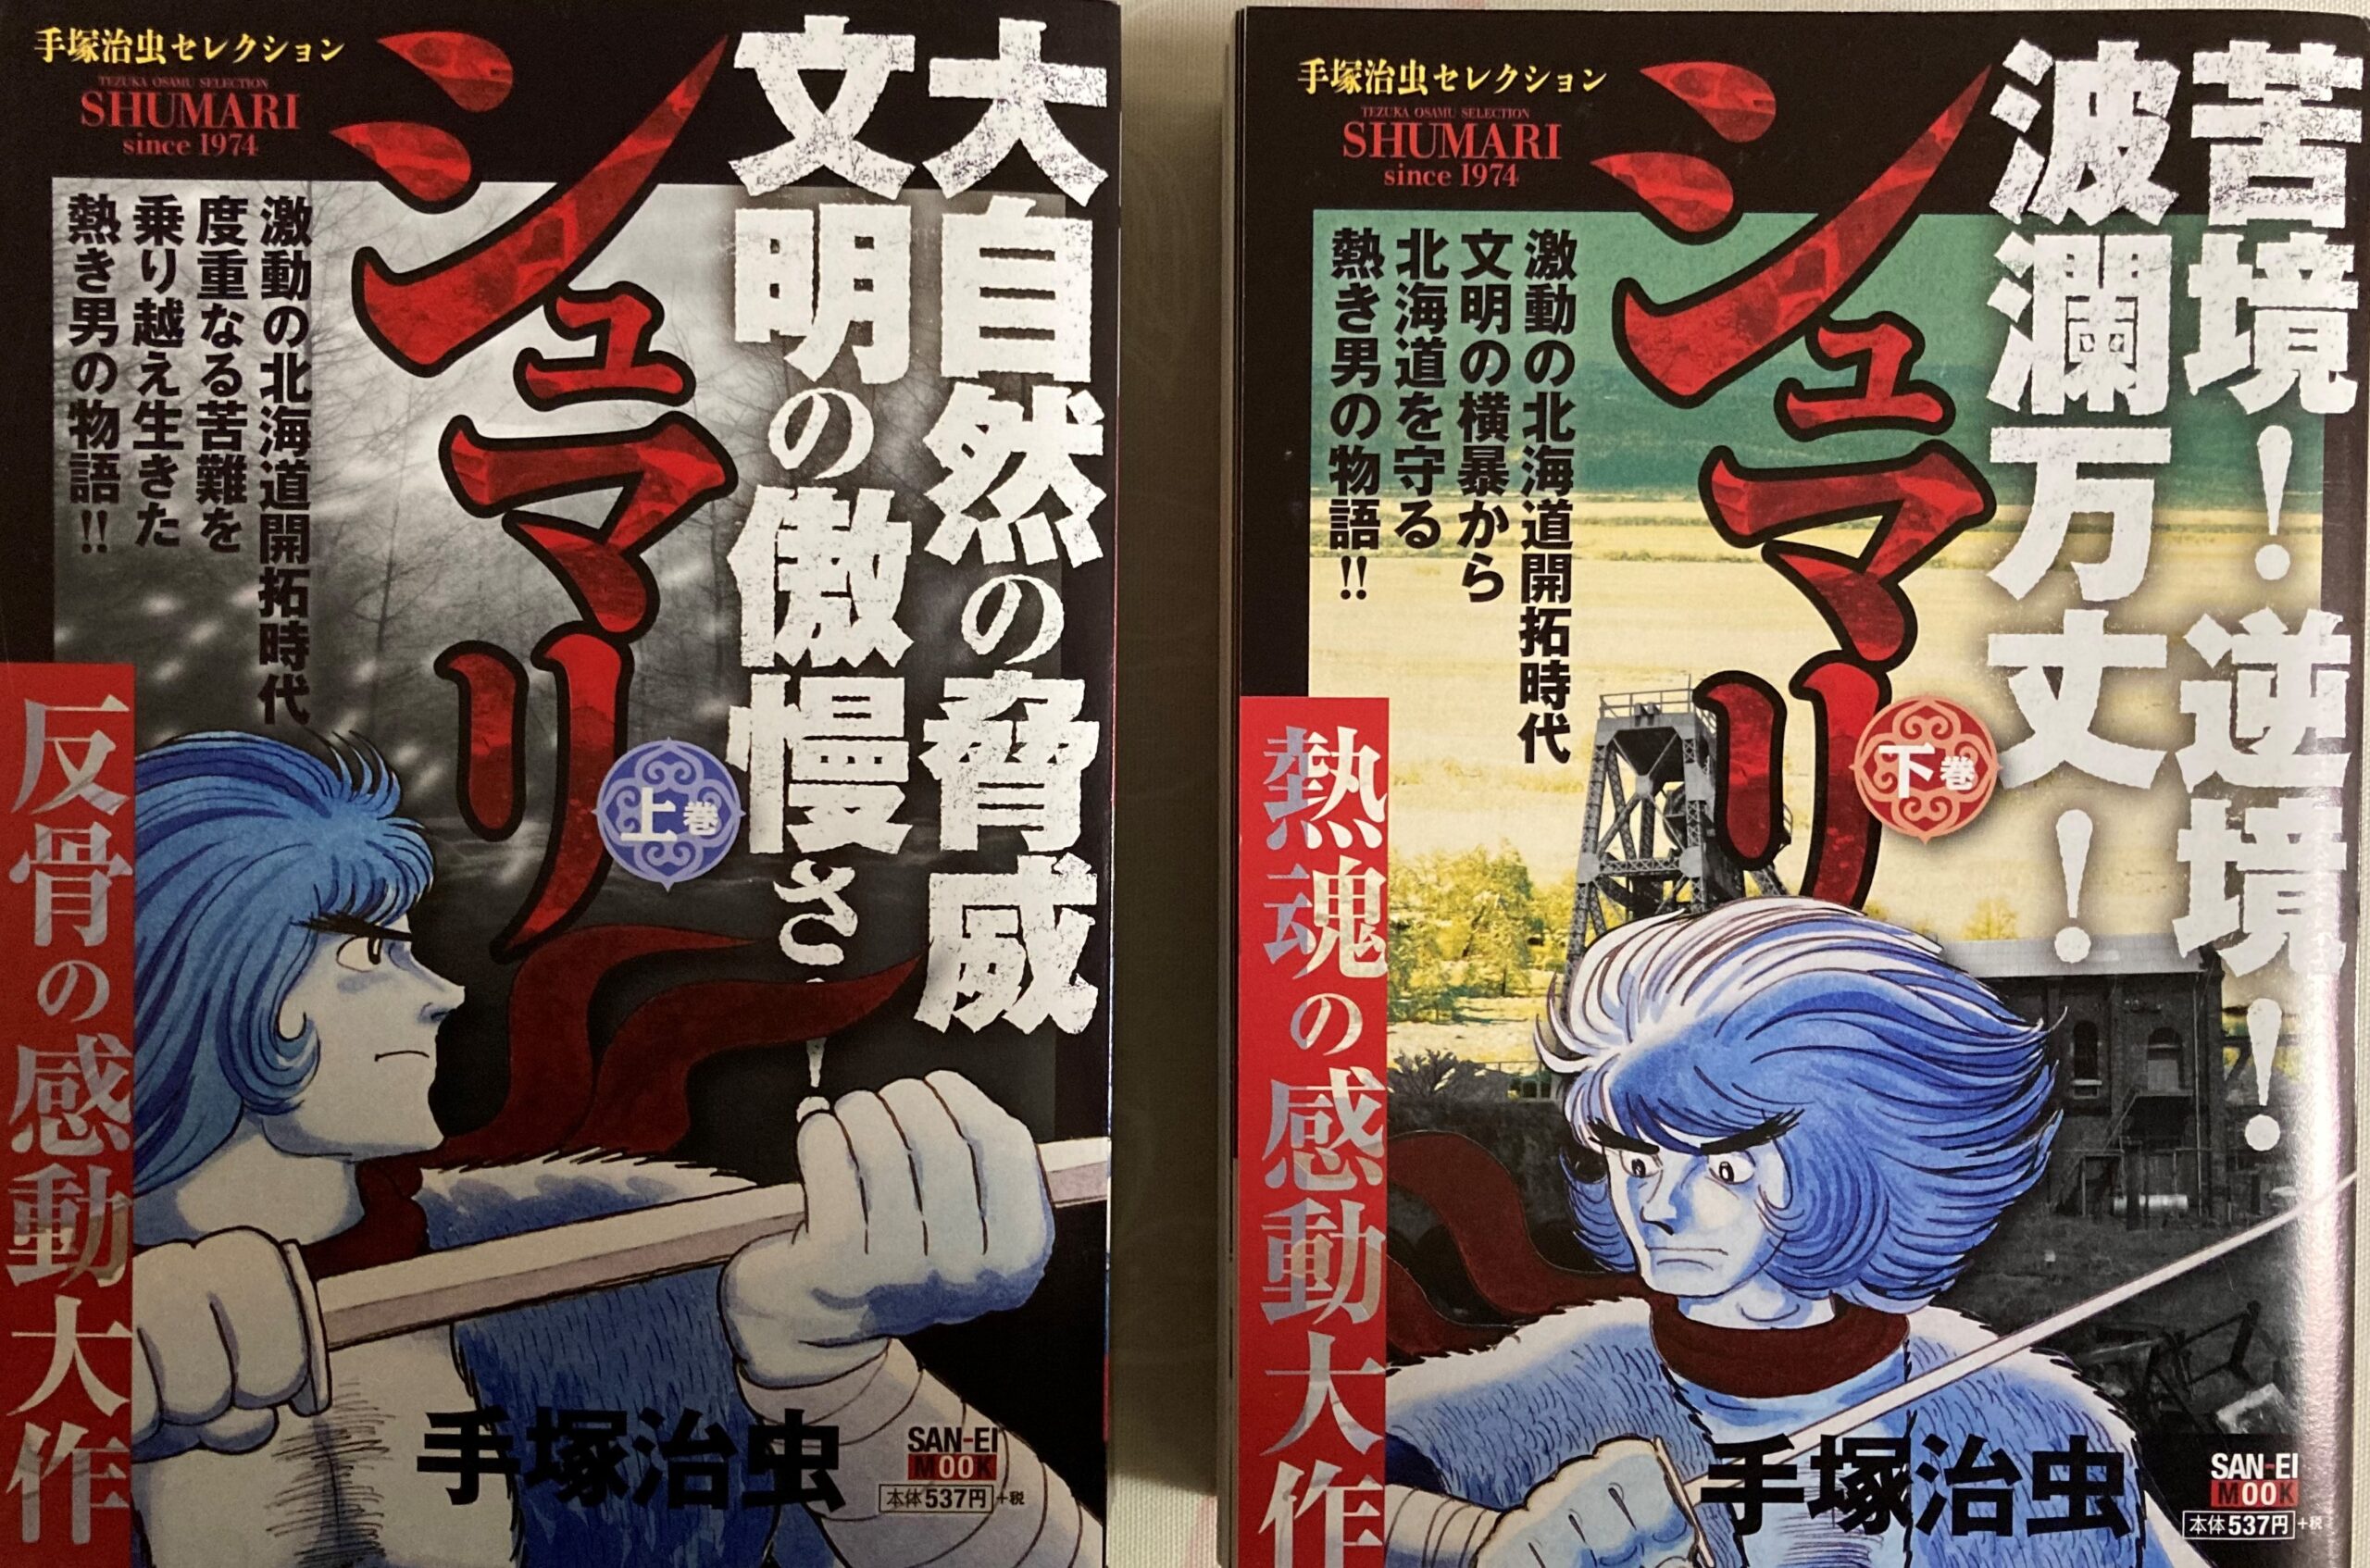 「シュマリ」のコンビニコミックス版上下２巻の表紙写真。